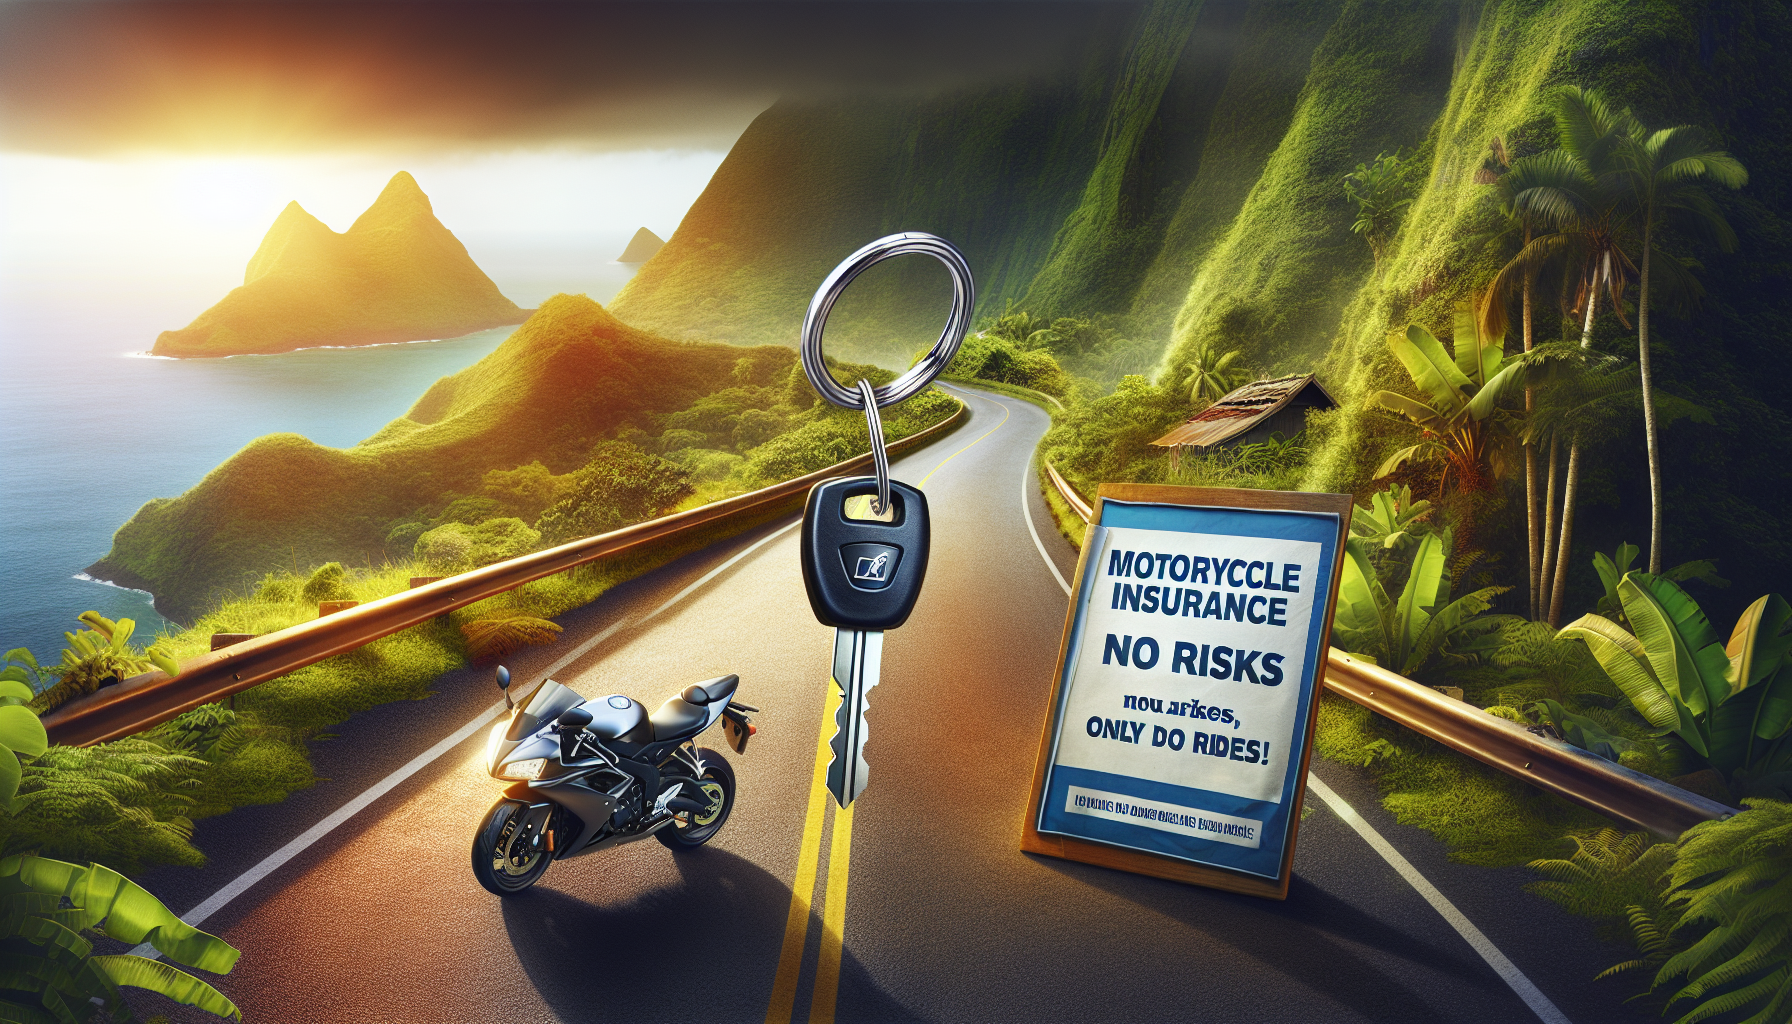 assurance moto à la réunion : découvrez notre offre d'assurance responsabilité civile pour votre moto à la réunion. obtenez une protection complète pour votre véhicule et roulez en toute sérénité.